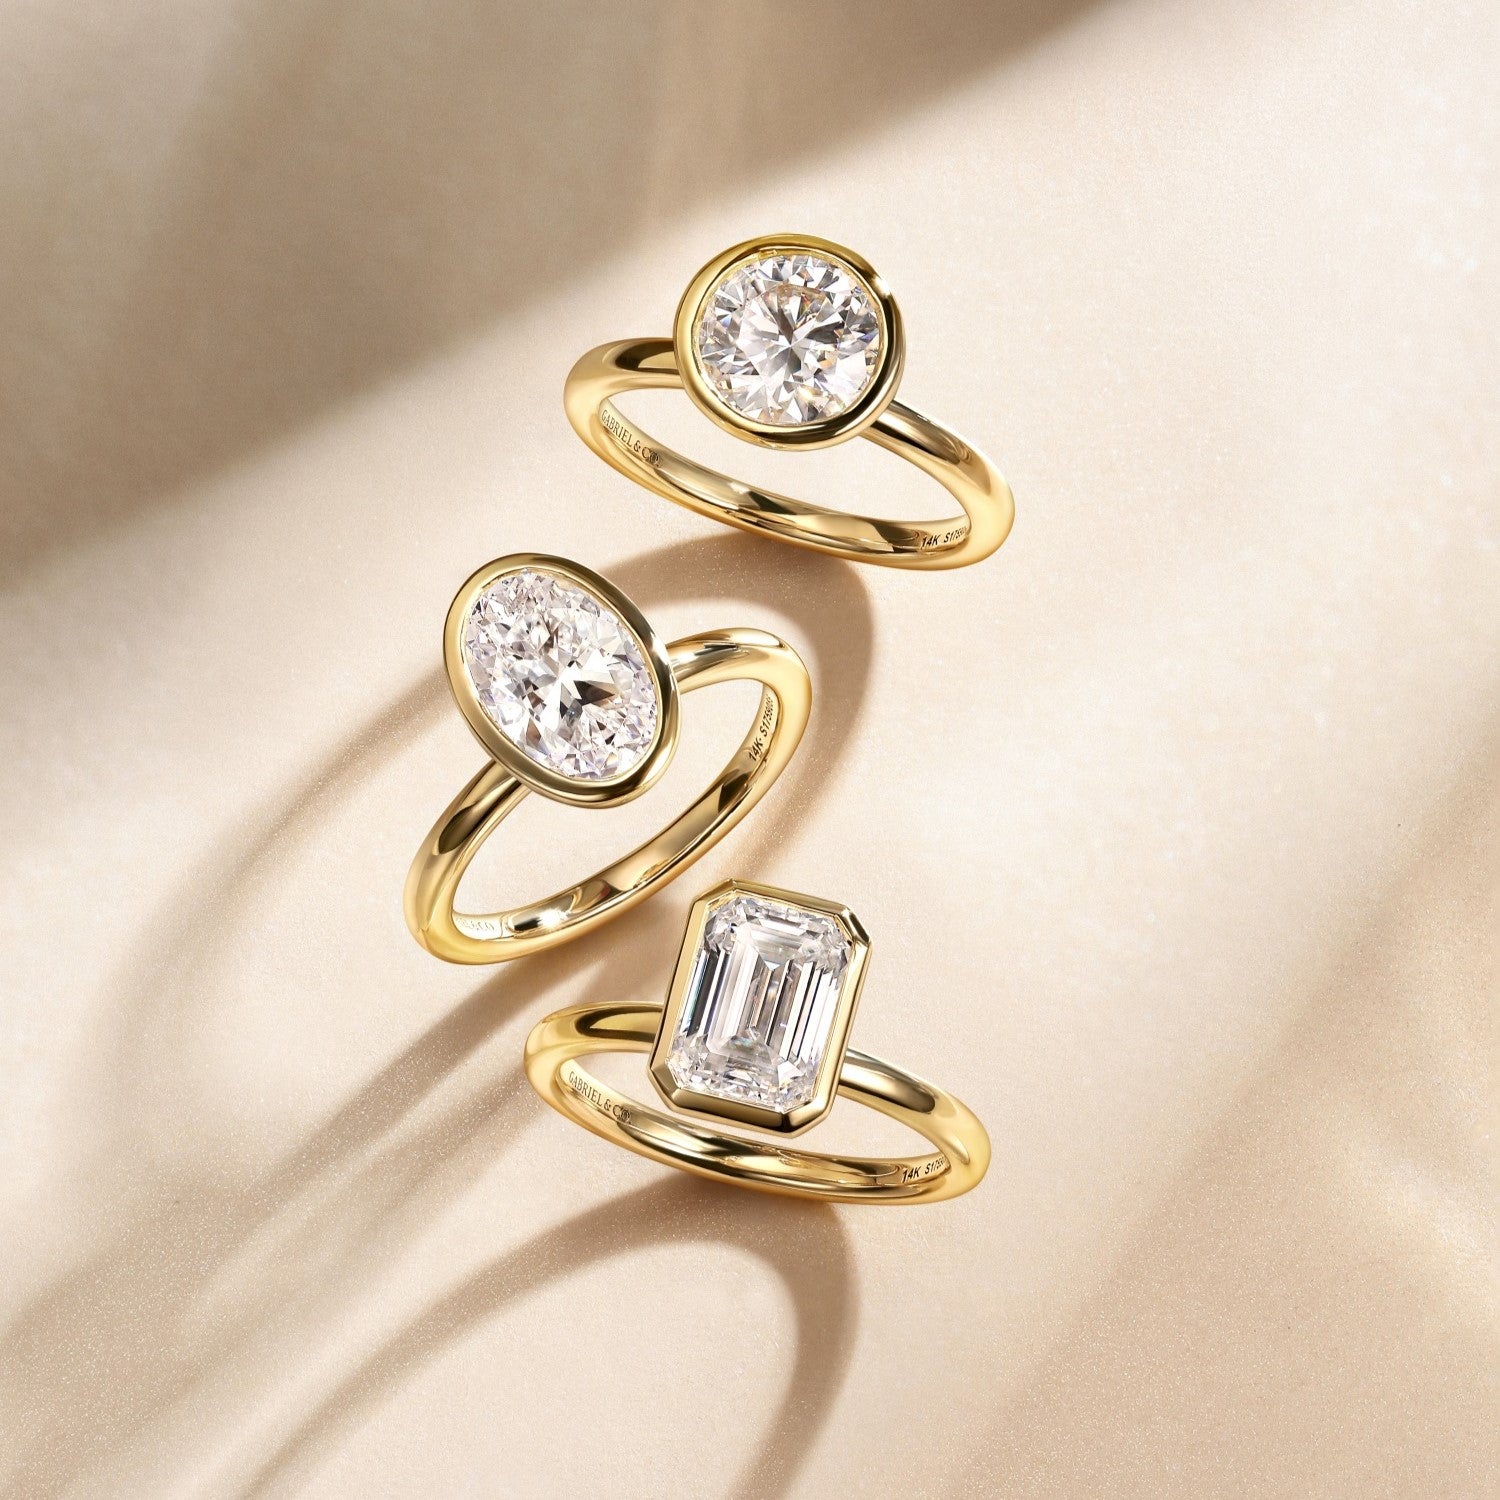 True Bijoux - Engagement Rings, Wedding Rings & Vintage Jewellery